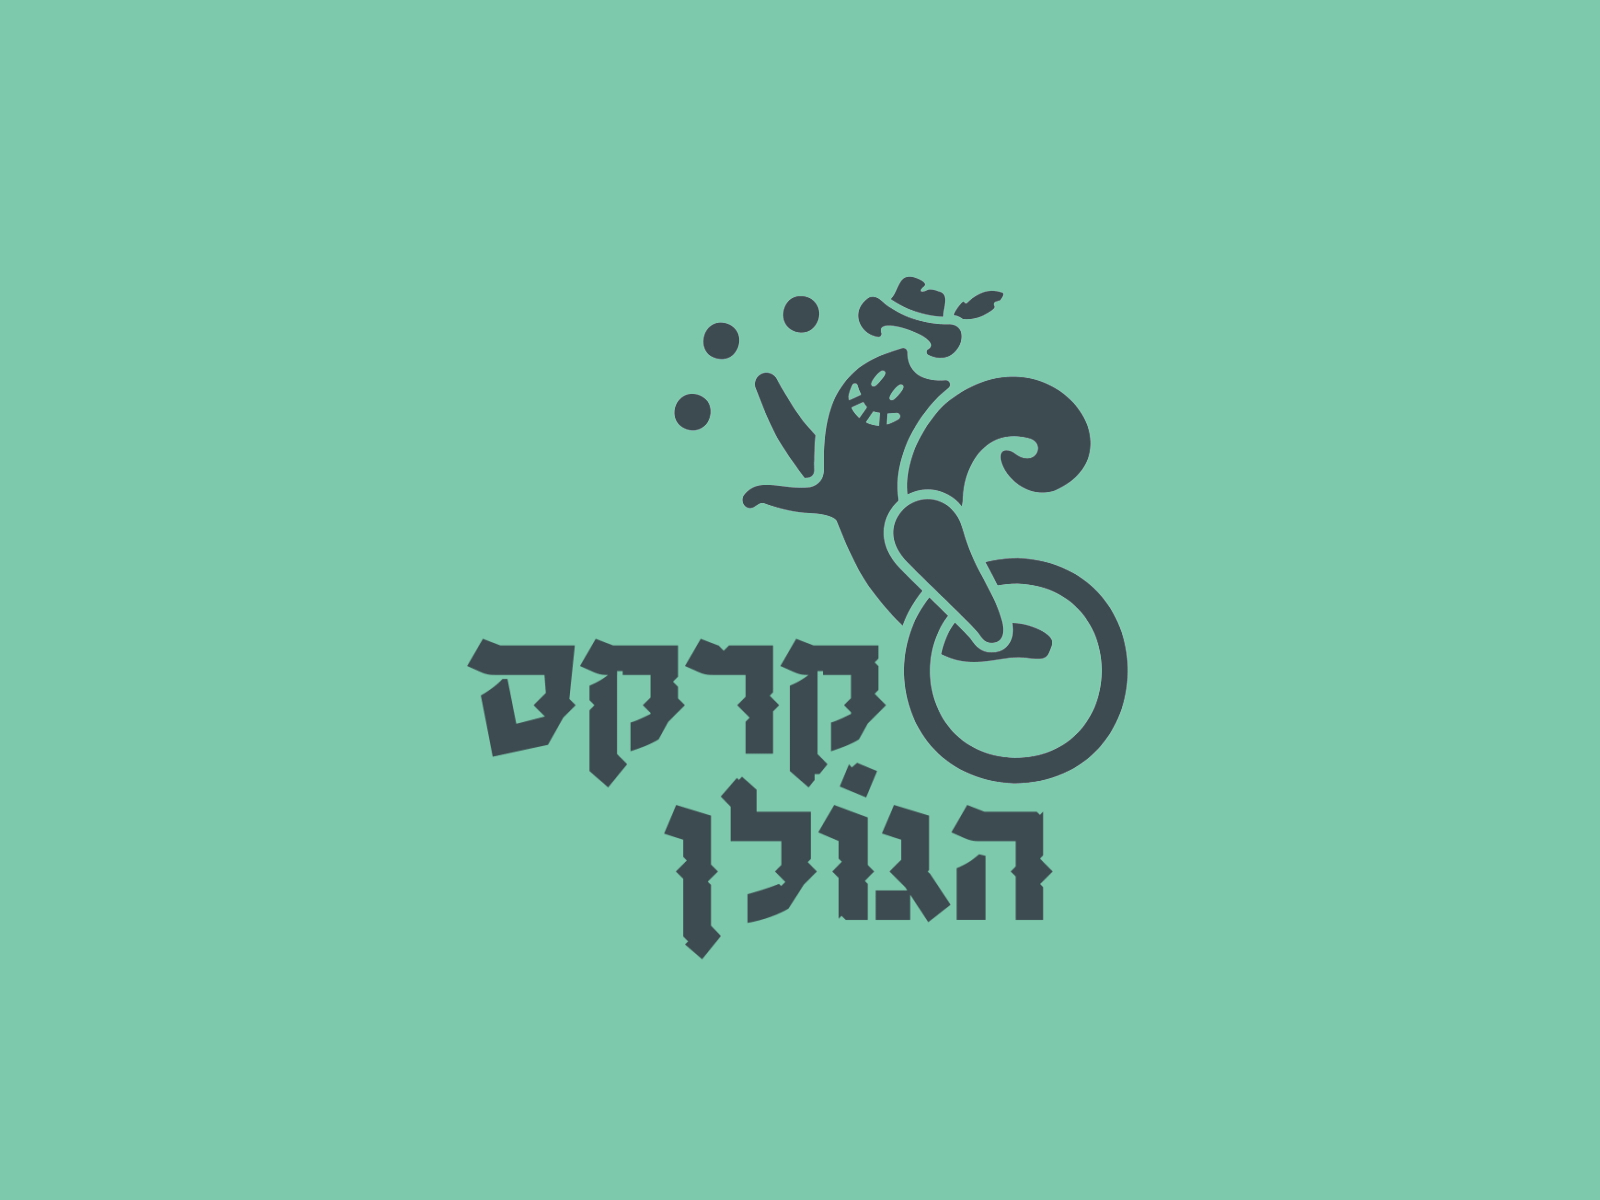 Golan Circus Branding branding design illustration logo vector